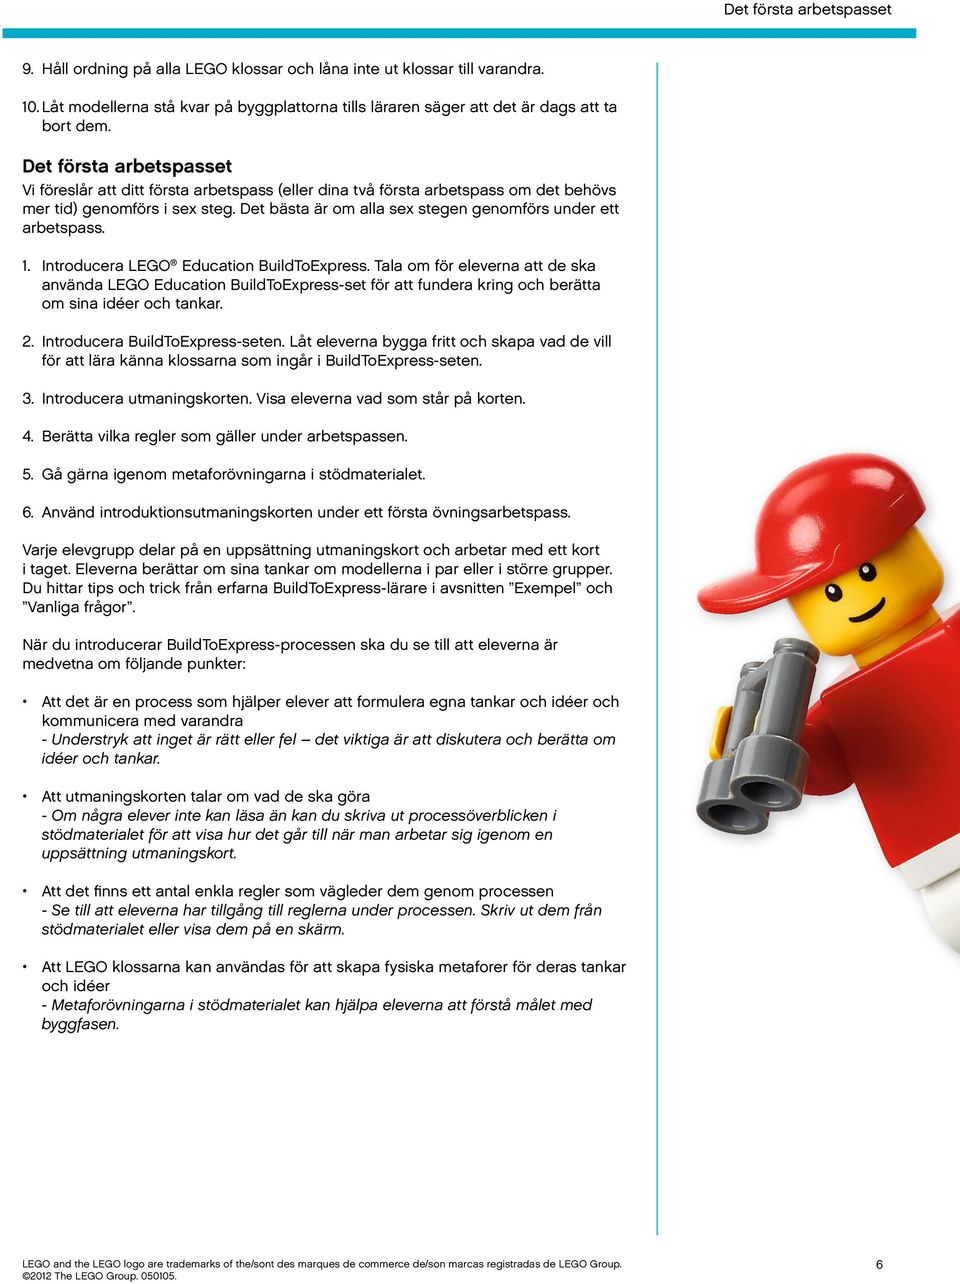 Det bästa är om alla sex stegen genomförs under ett arbetspass. 1. Introducera LEGO Education BuildToExpress.